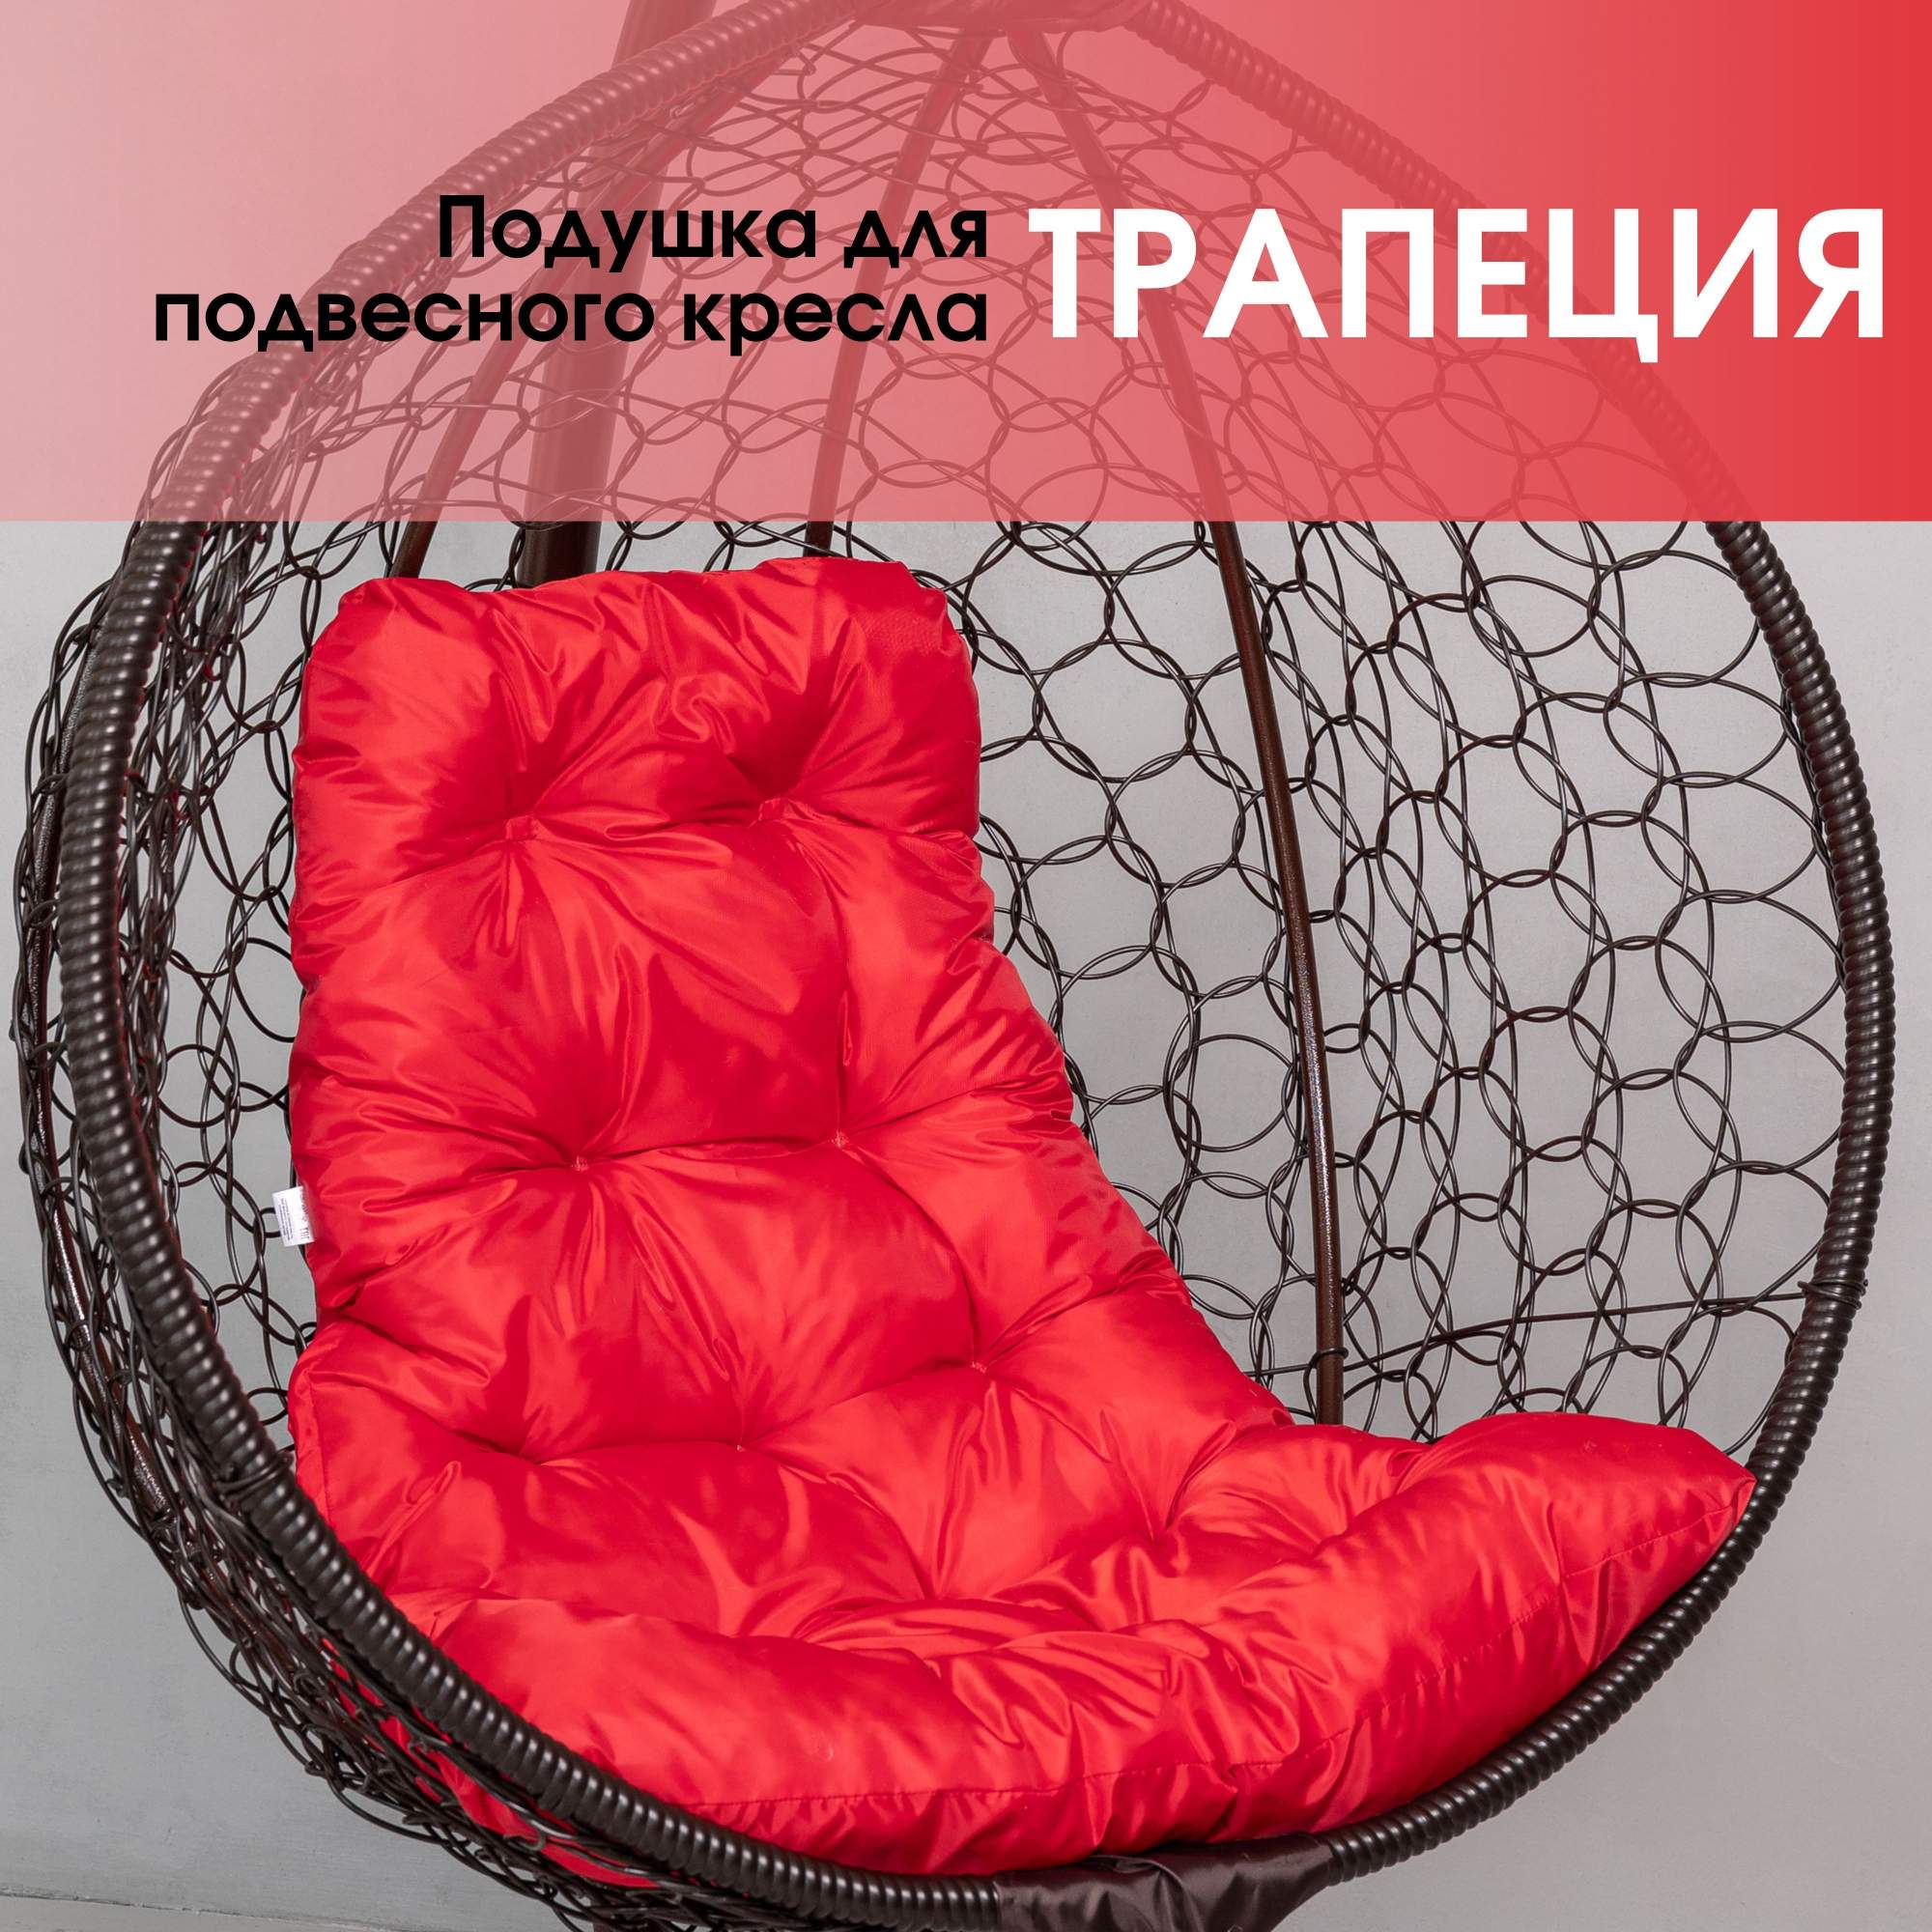 Подушка для подвесного кресла STULER трапеция PO08TR Красная